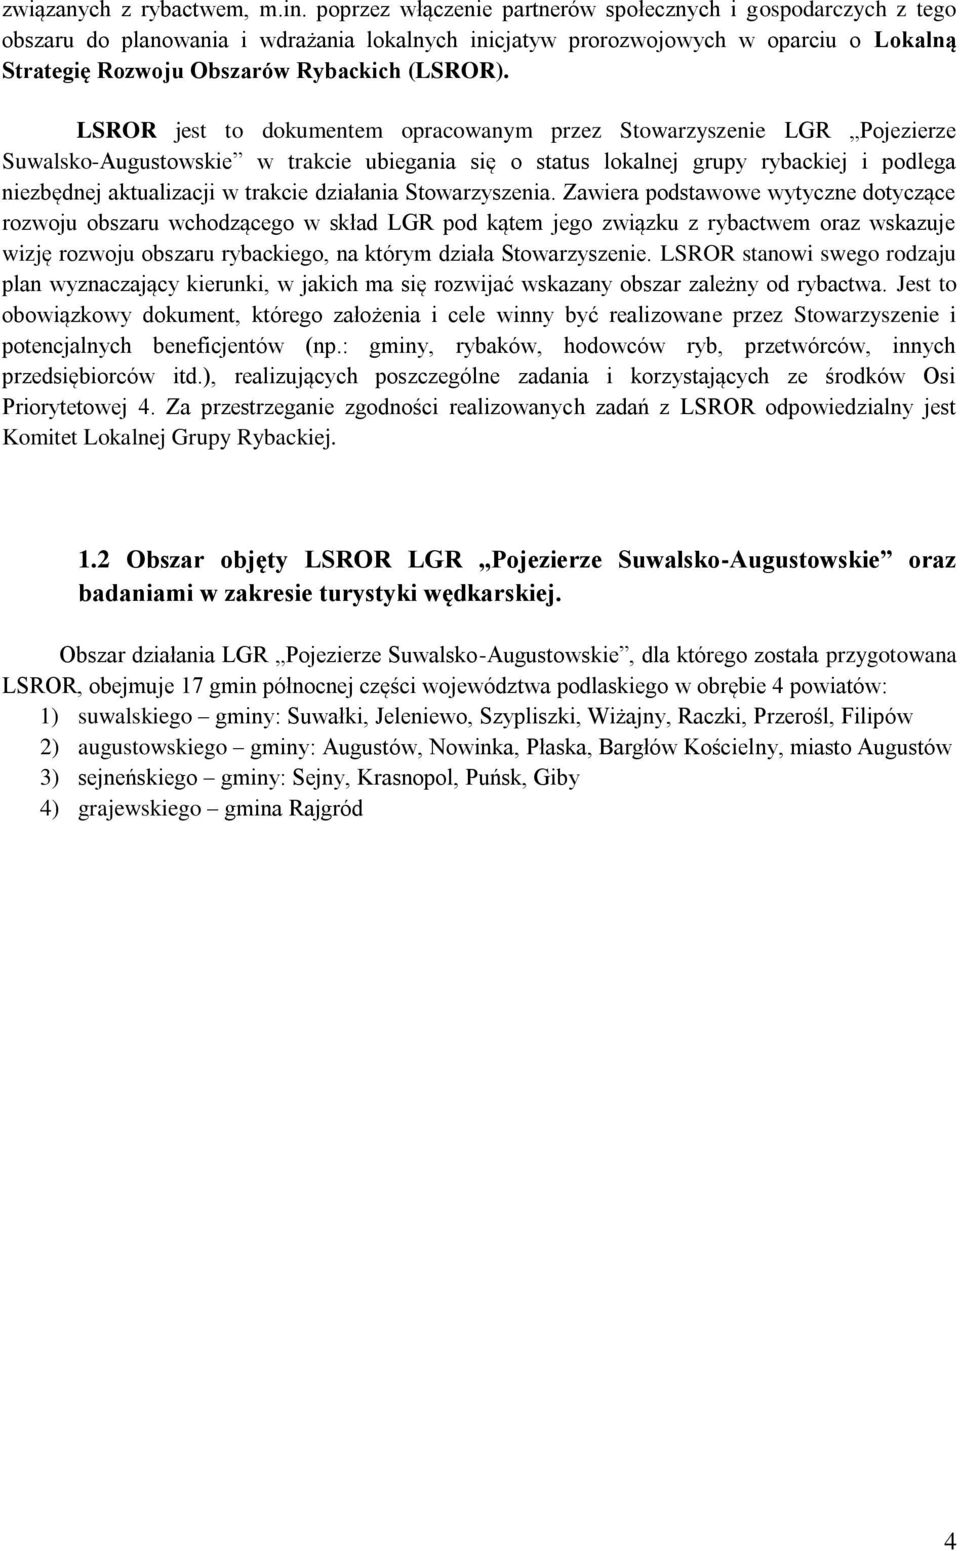 LSROR jest to dokumentem opracowanym przez Stowarzyszenie LGR Pojezierze Suwalsko-Augustowskie w trakcie ubiegania się o status lokalnej grupy rybackiej i podlega niezbędnej aktualizacji w trakcie